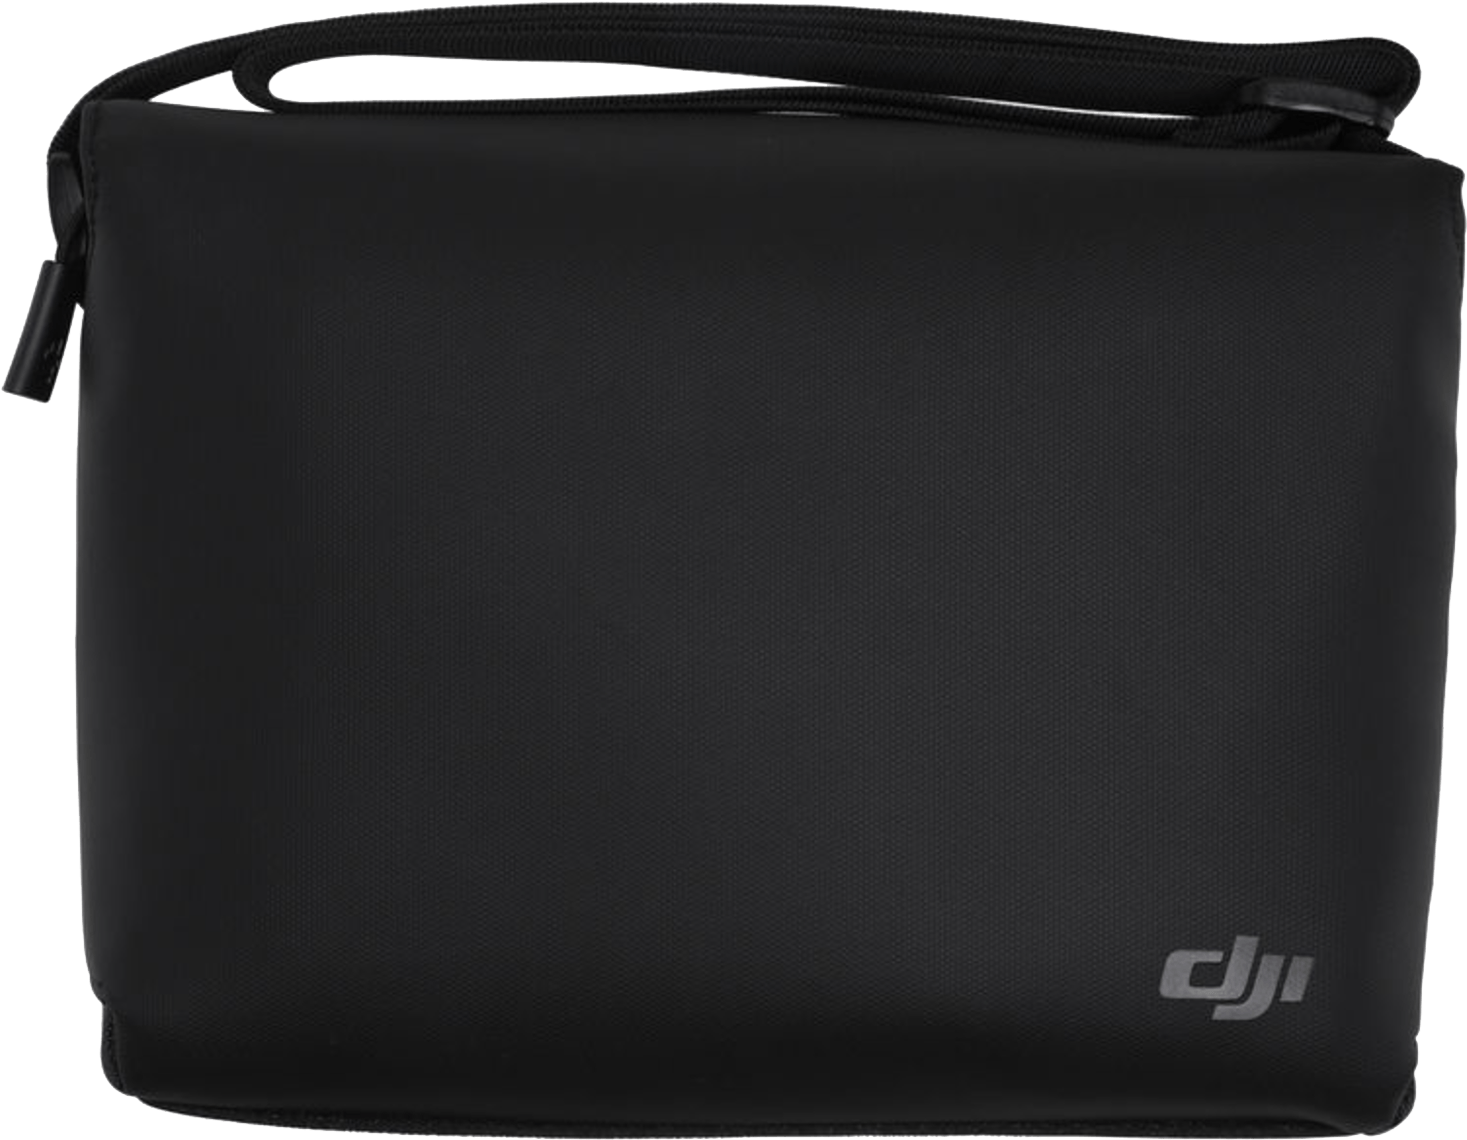 Dji Spark Shoulder Bag - Dji Shoulder Bag - Black - For Spark (1600x1200), Png Download